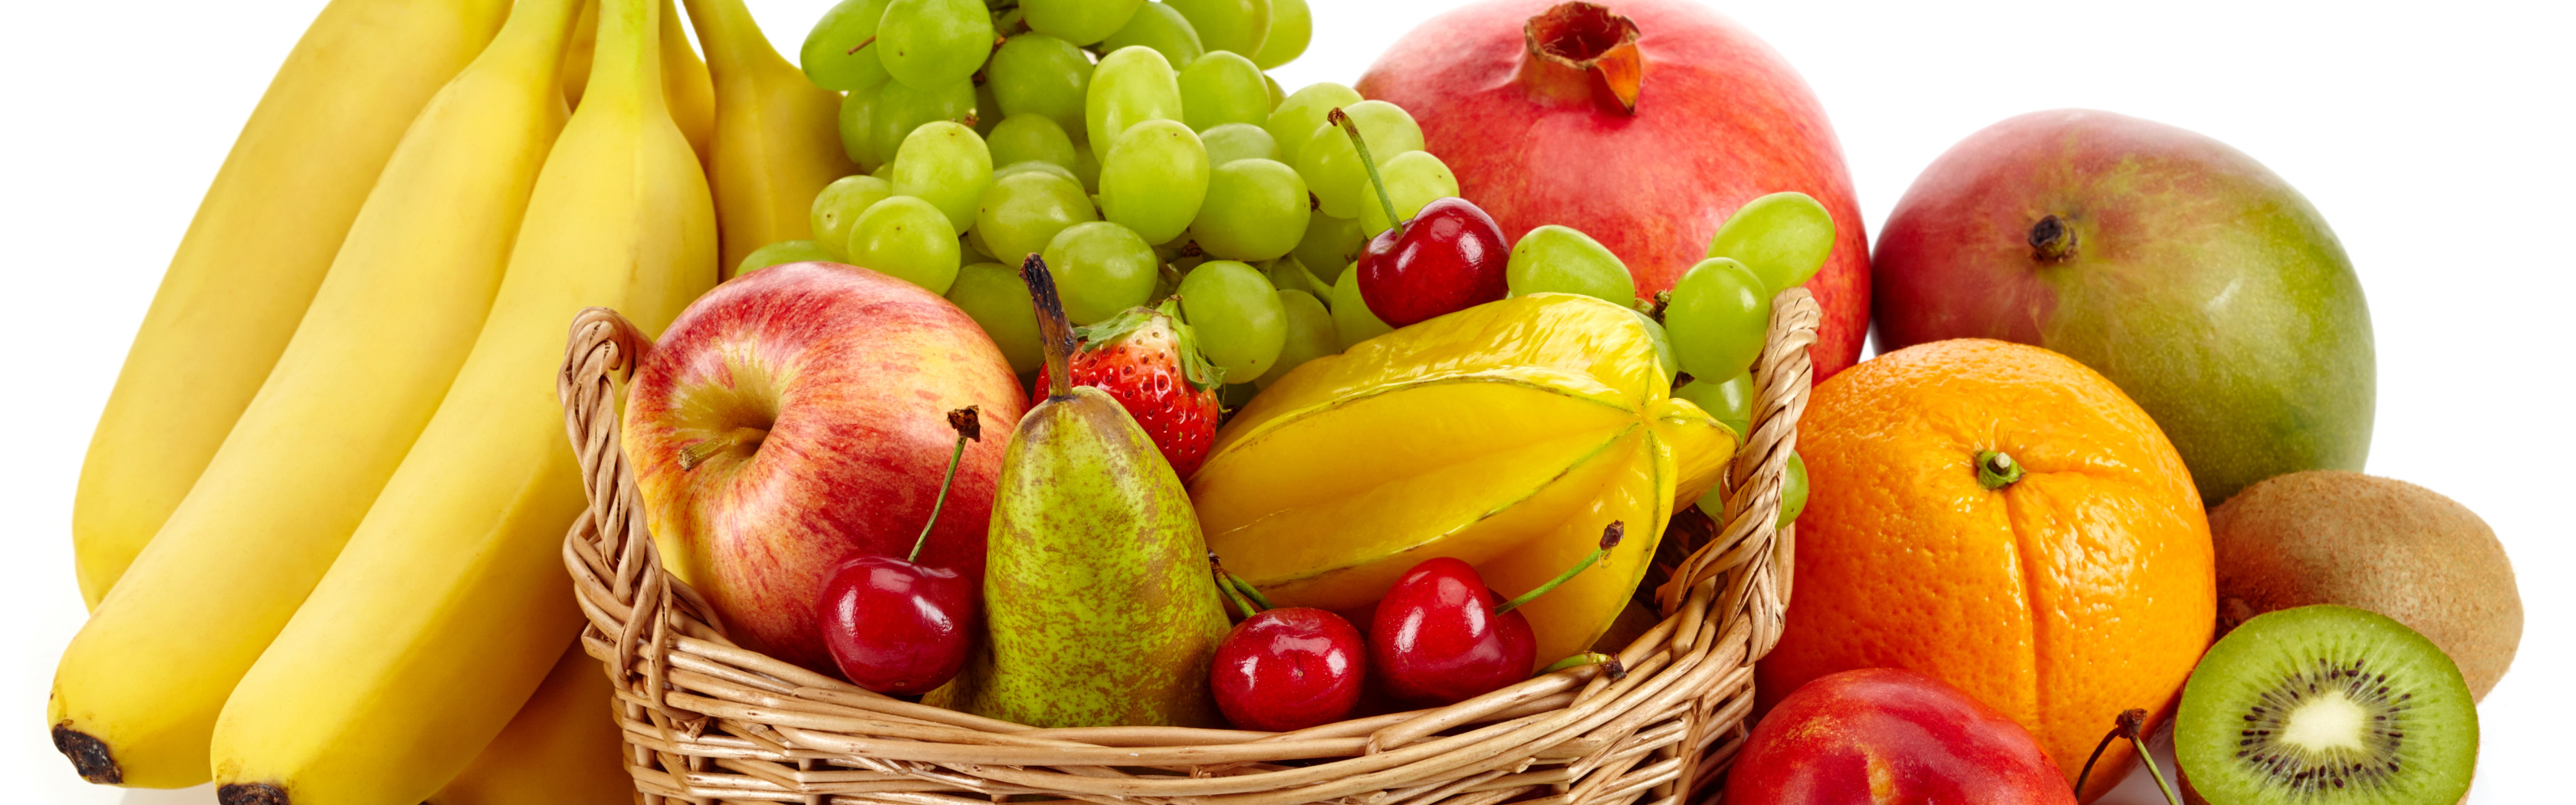 Frutas que empiezan por s